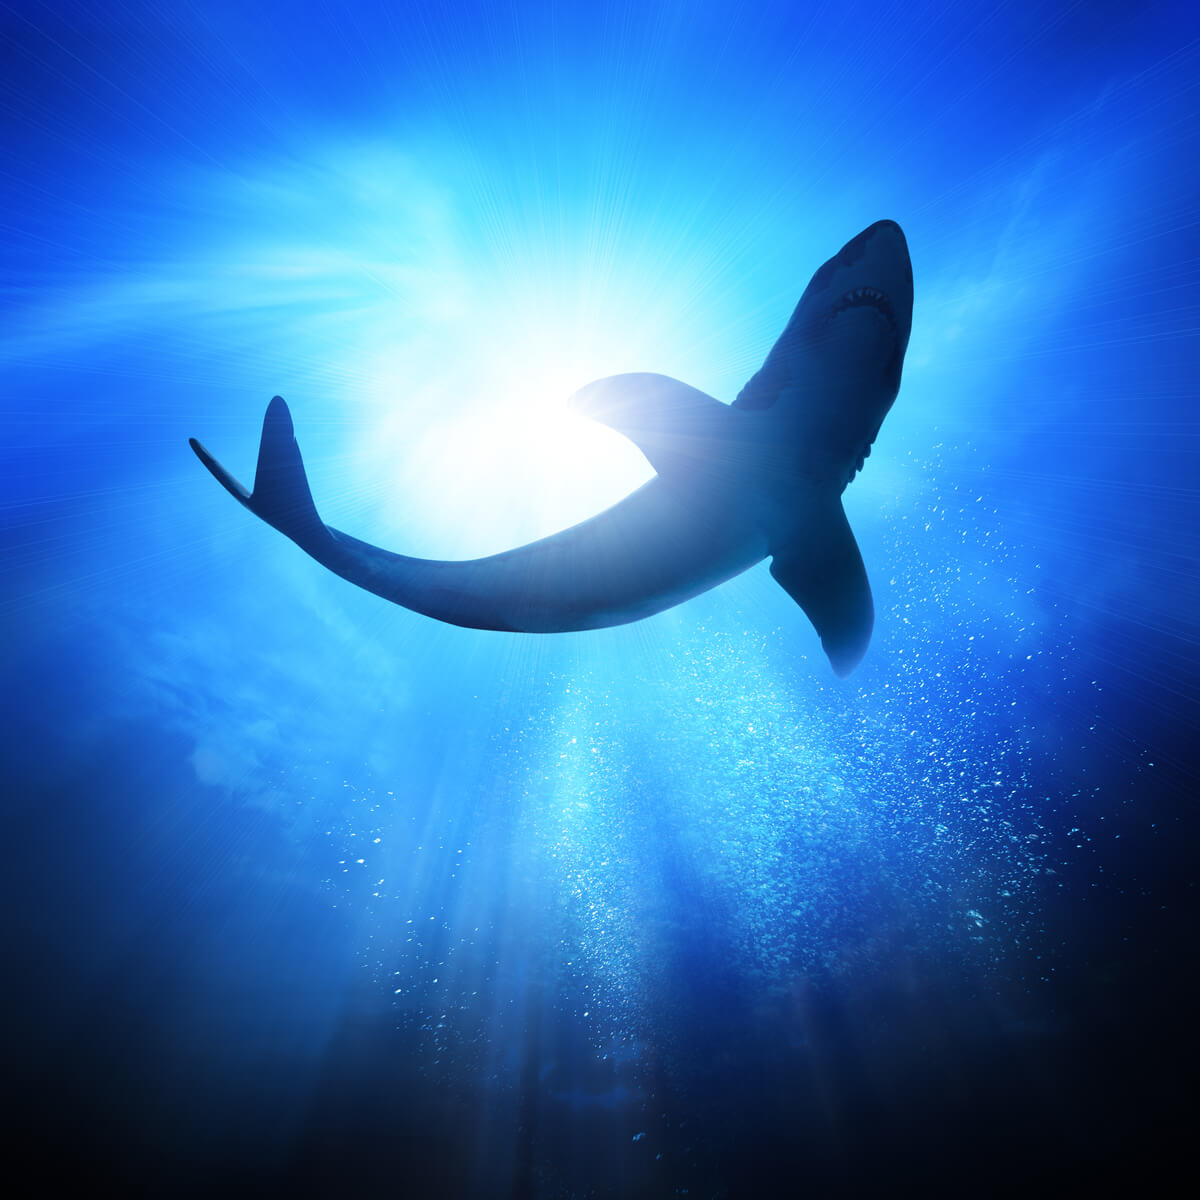 Haie pflegen dauerhafte Beziehungen - ein Hai von unten